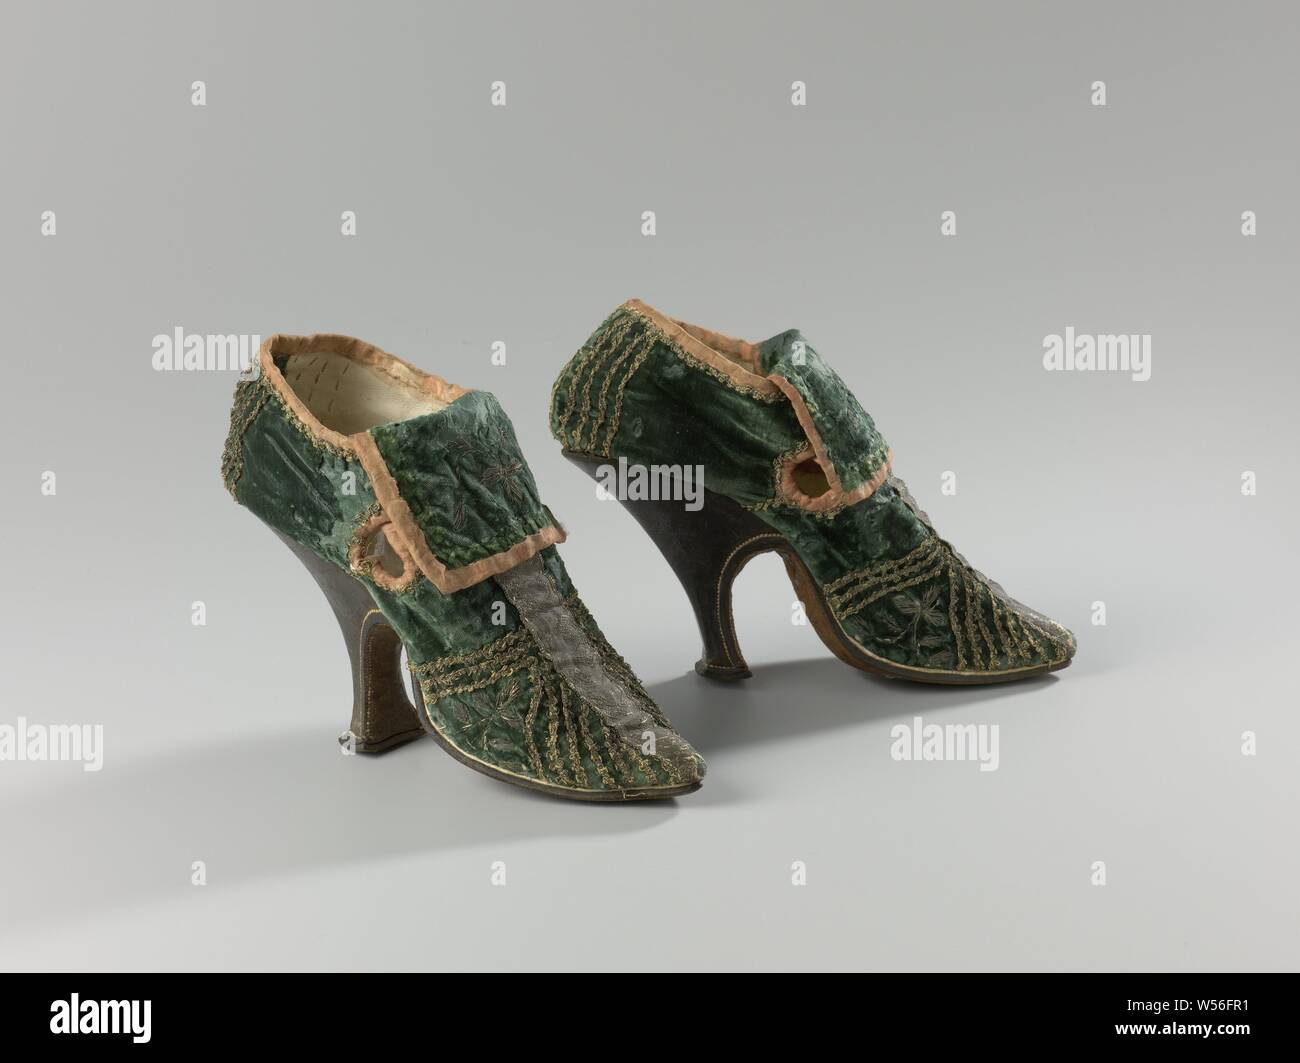 Par de zapatos de mujer High-Heeled par de mujer zapatos de tacón del zapato de mujer de verde decorado con paredes verticales y diagonales guarnecidos de plata, con tacón alto fino